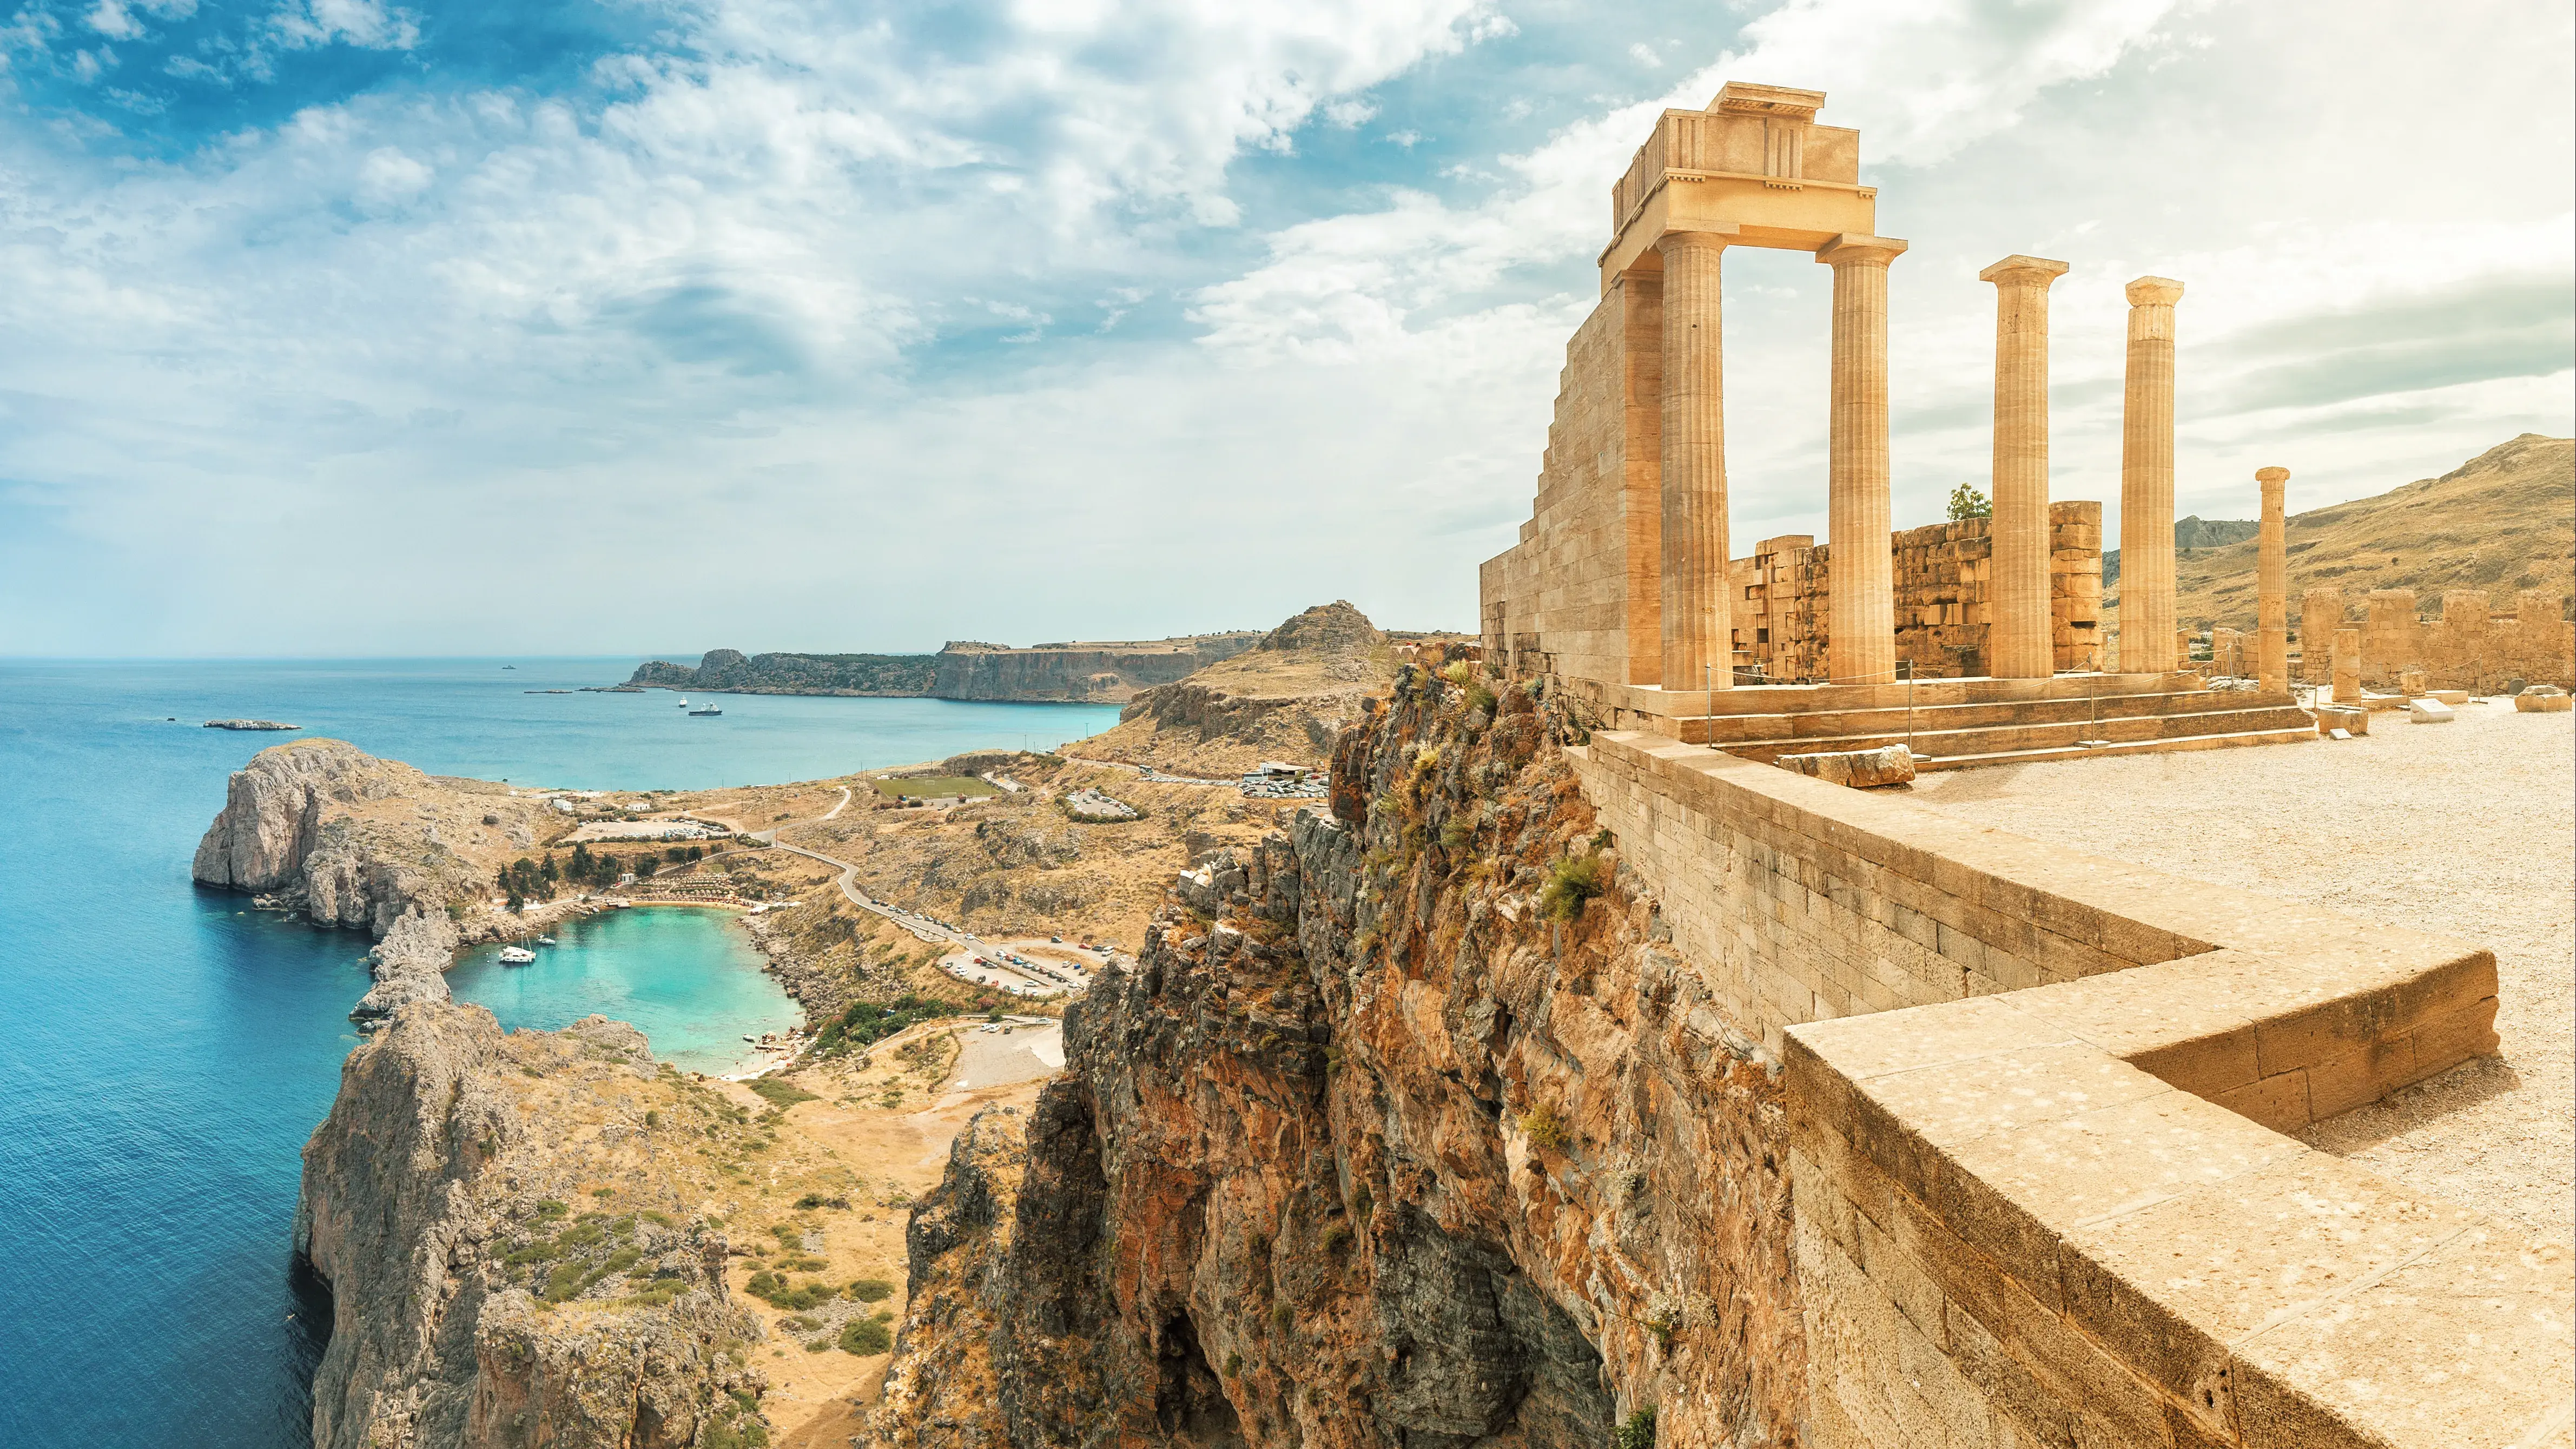 Ruins in the Greek Isles